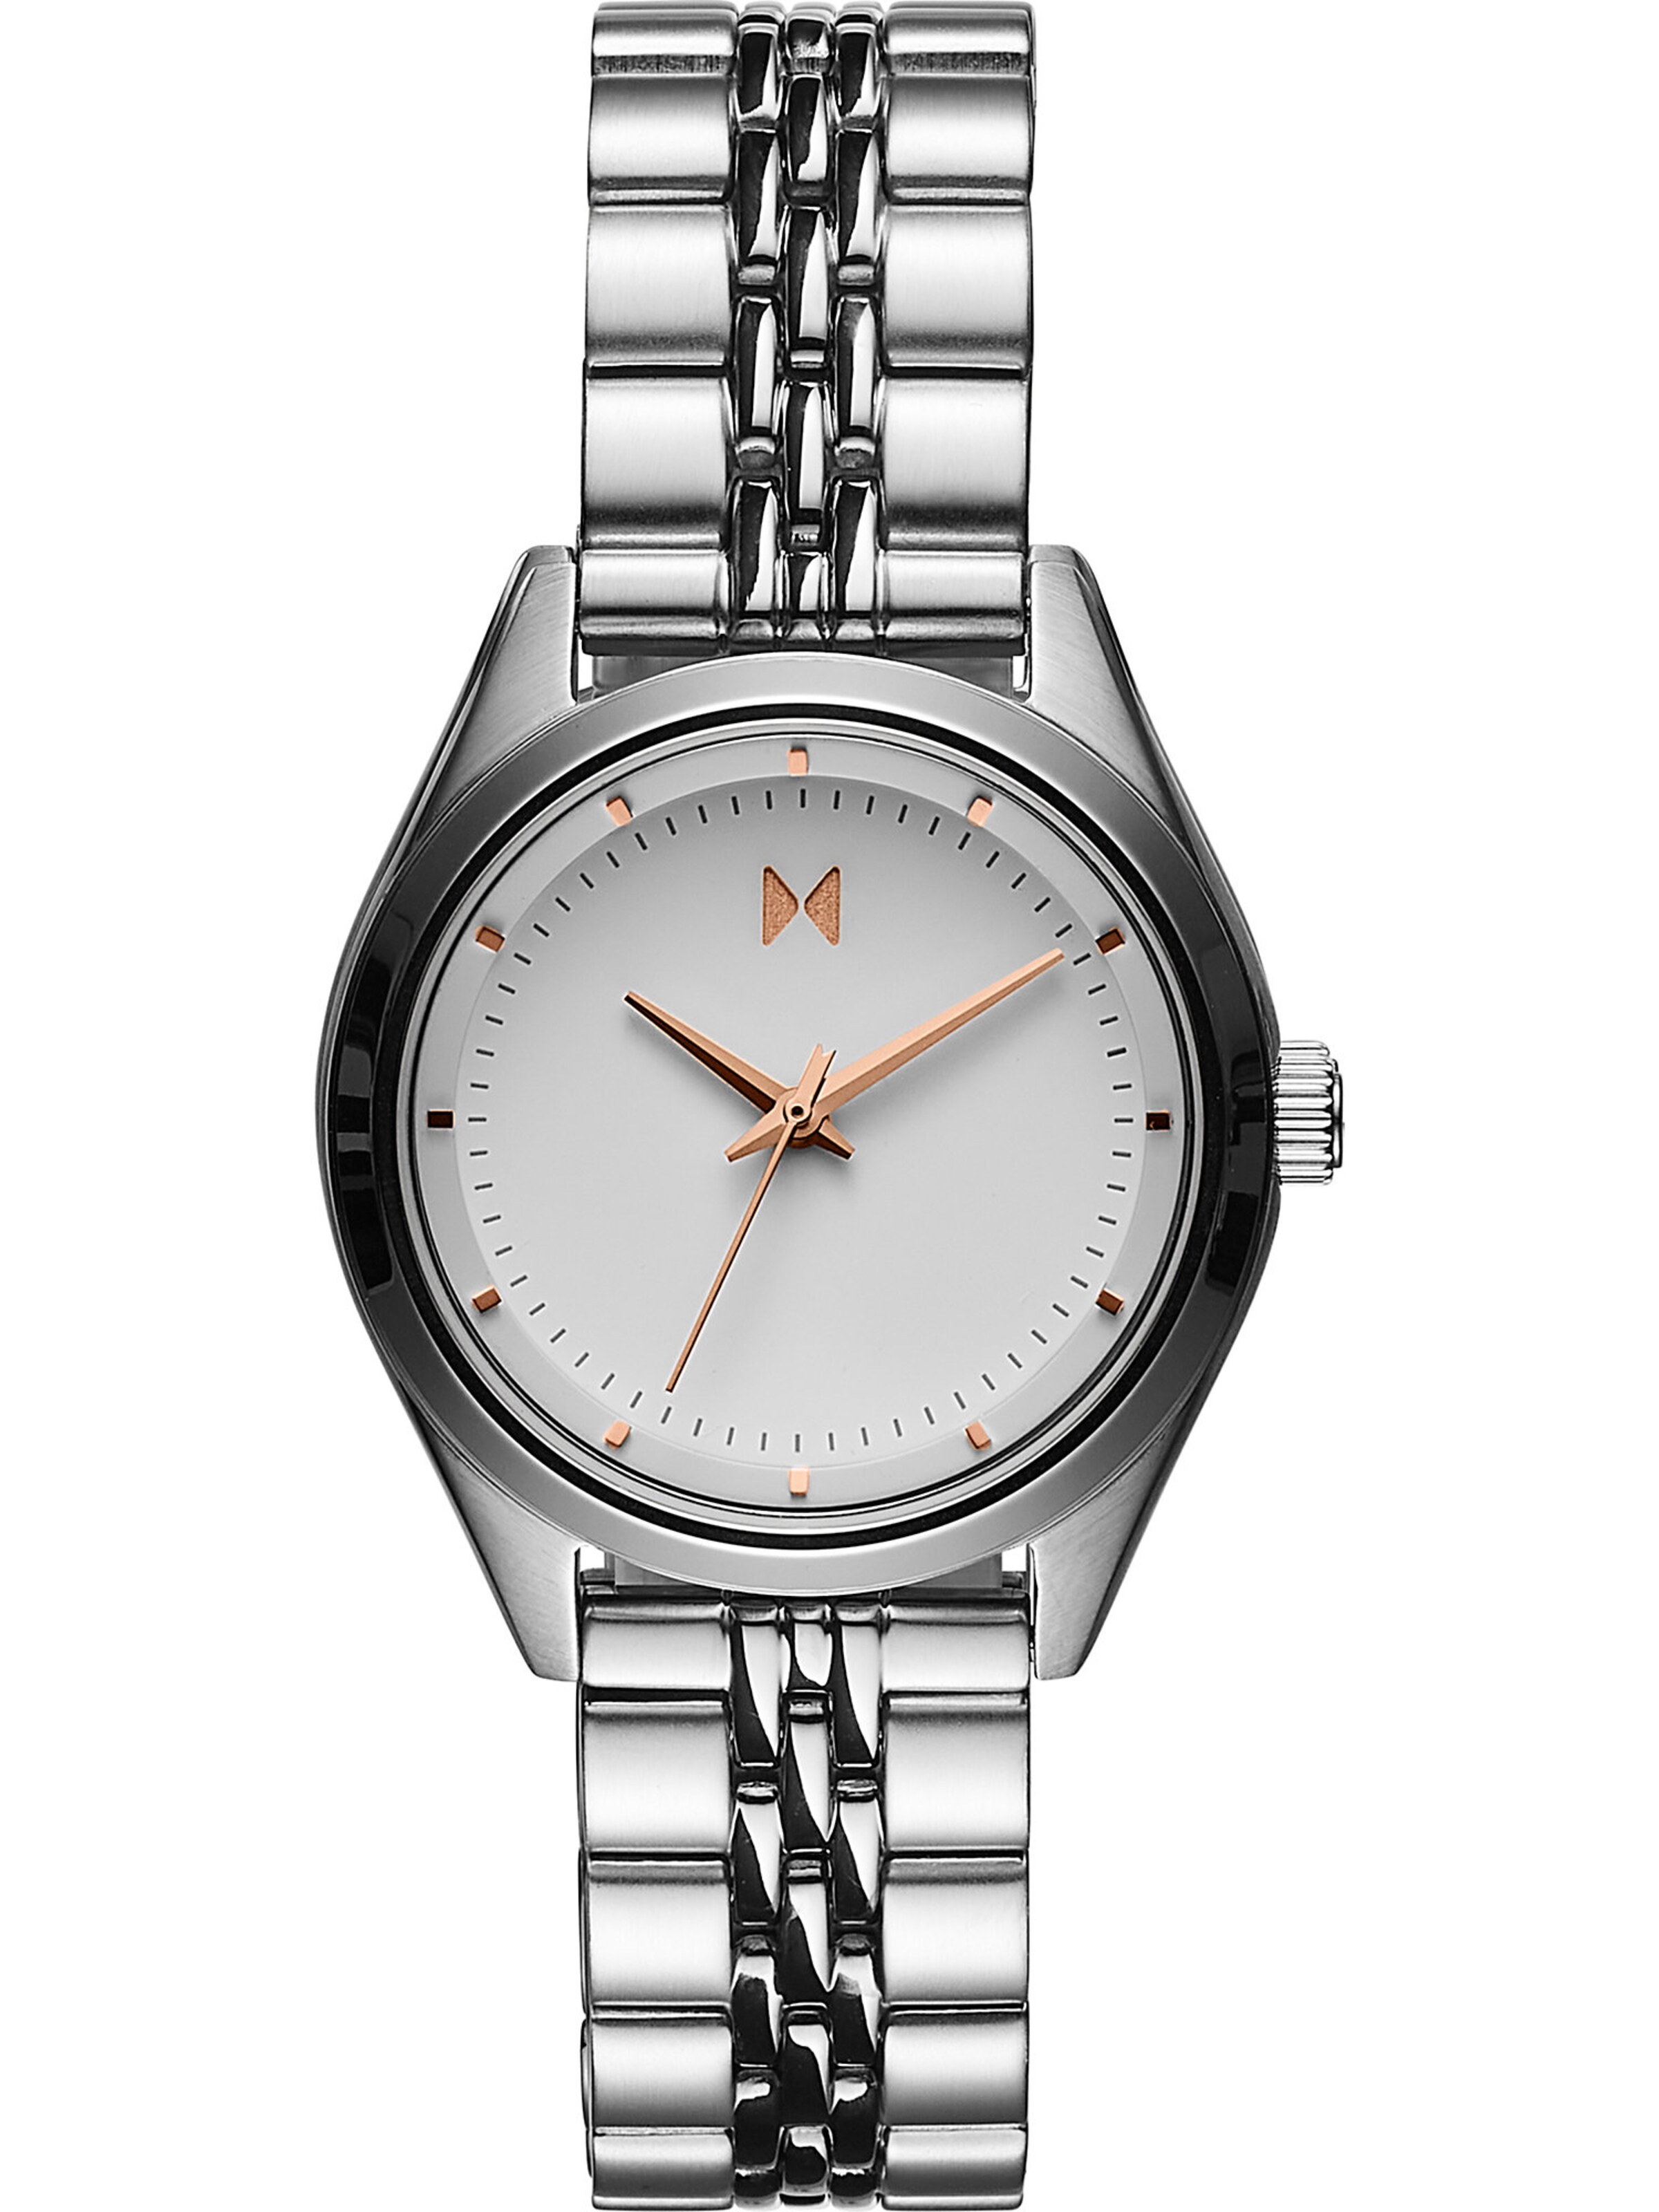 Frauen Uhren MVMT Analoguhr in Silber - QY47649